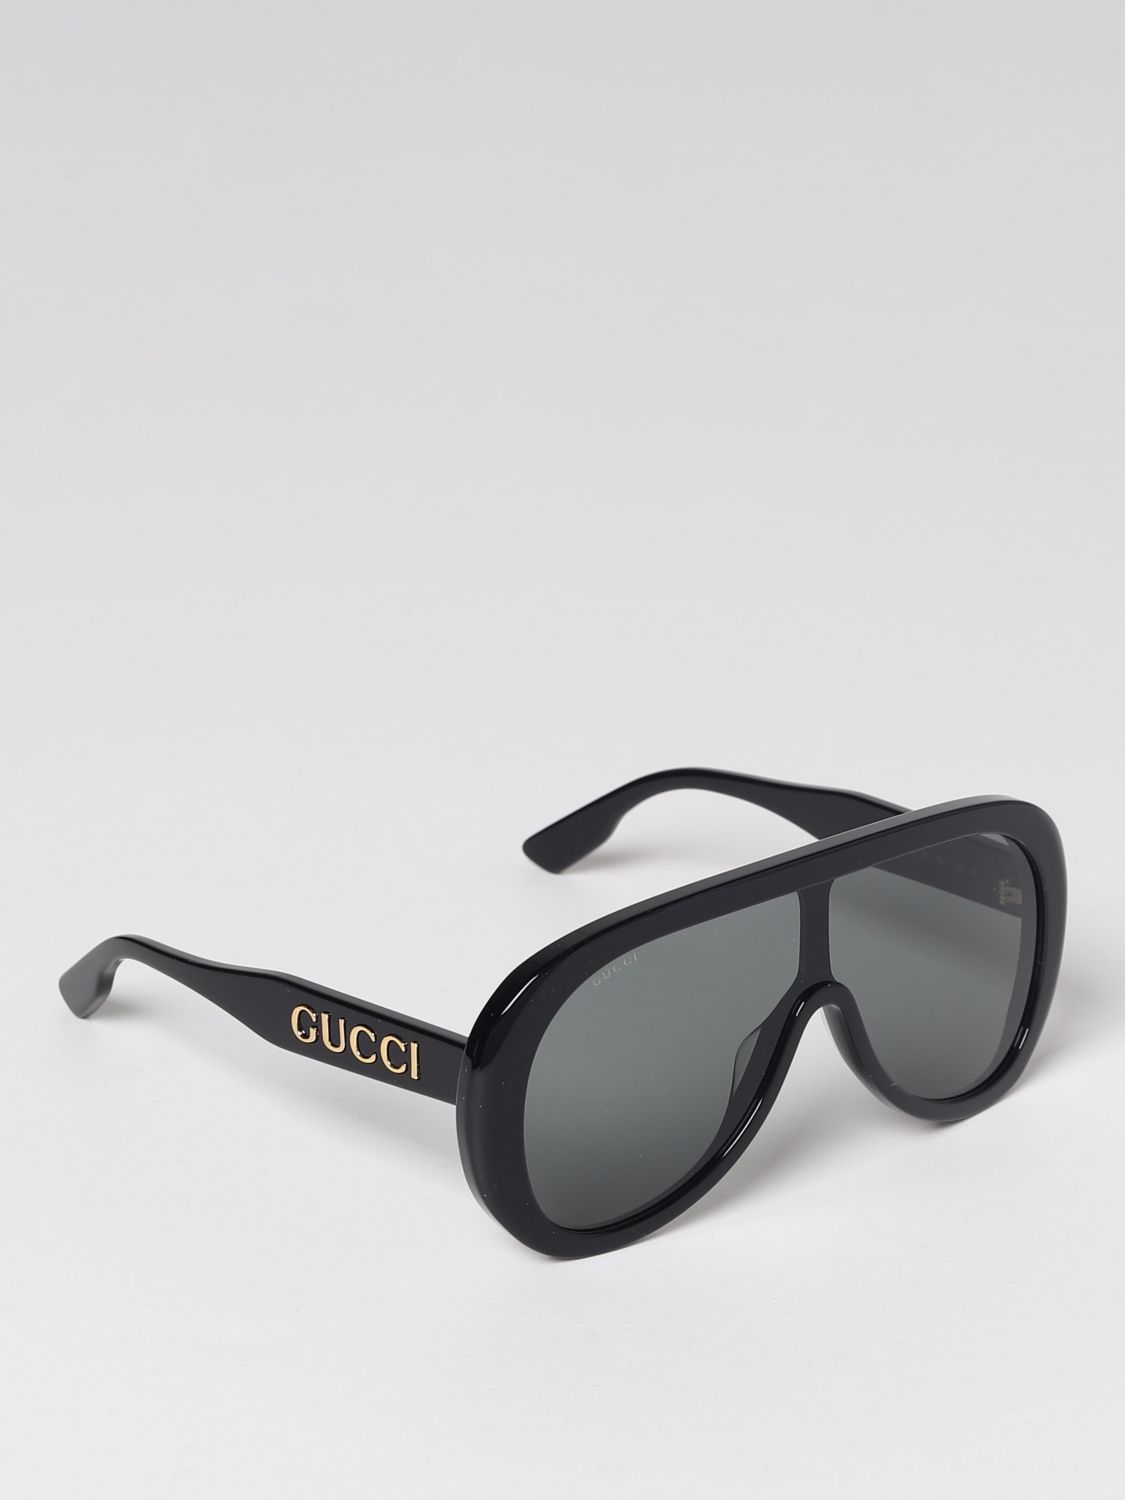 GUCCI: Gafas para hombre, Negro | Gucci GG1370S en línea en GIGLIO.COM